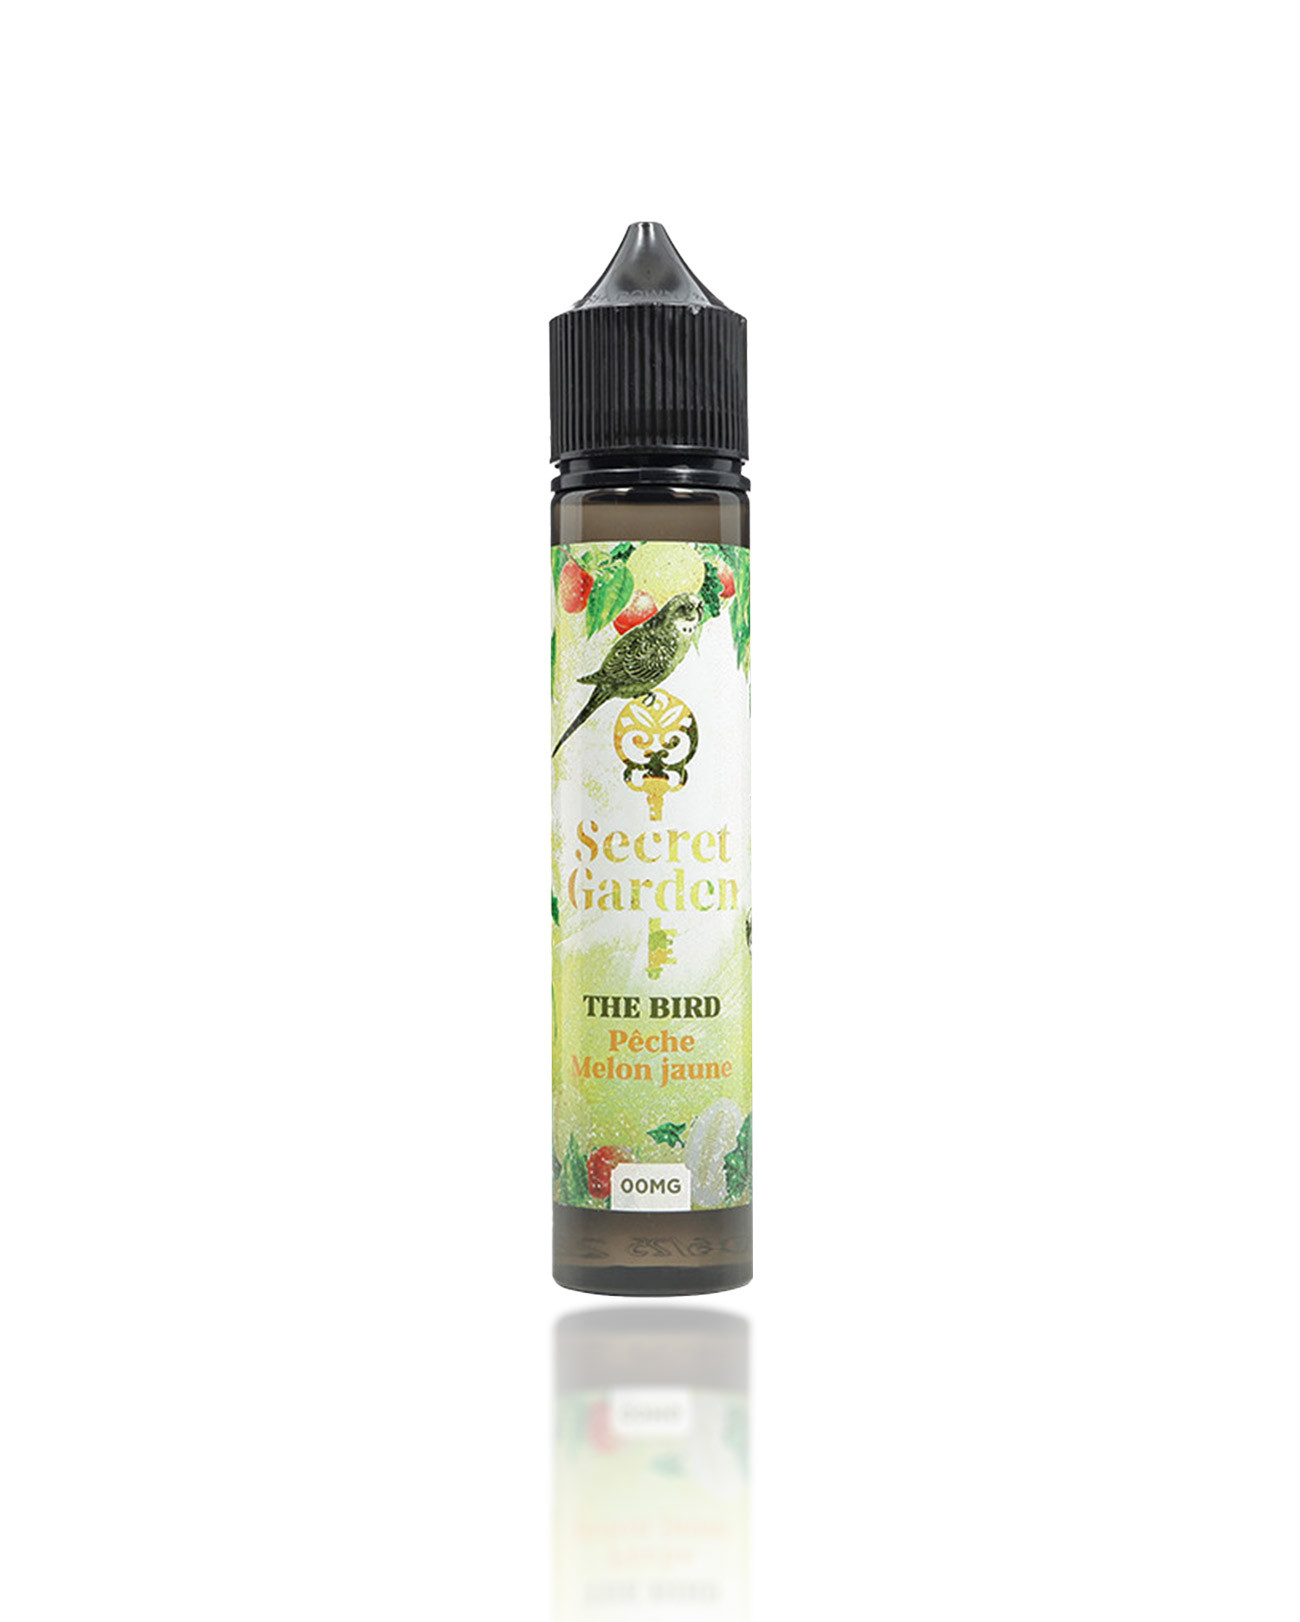 E-liquide 50 ml pour cigarette électronique Secret Garden The Bird parfum frais pêche et melon